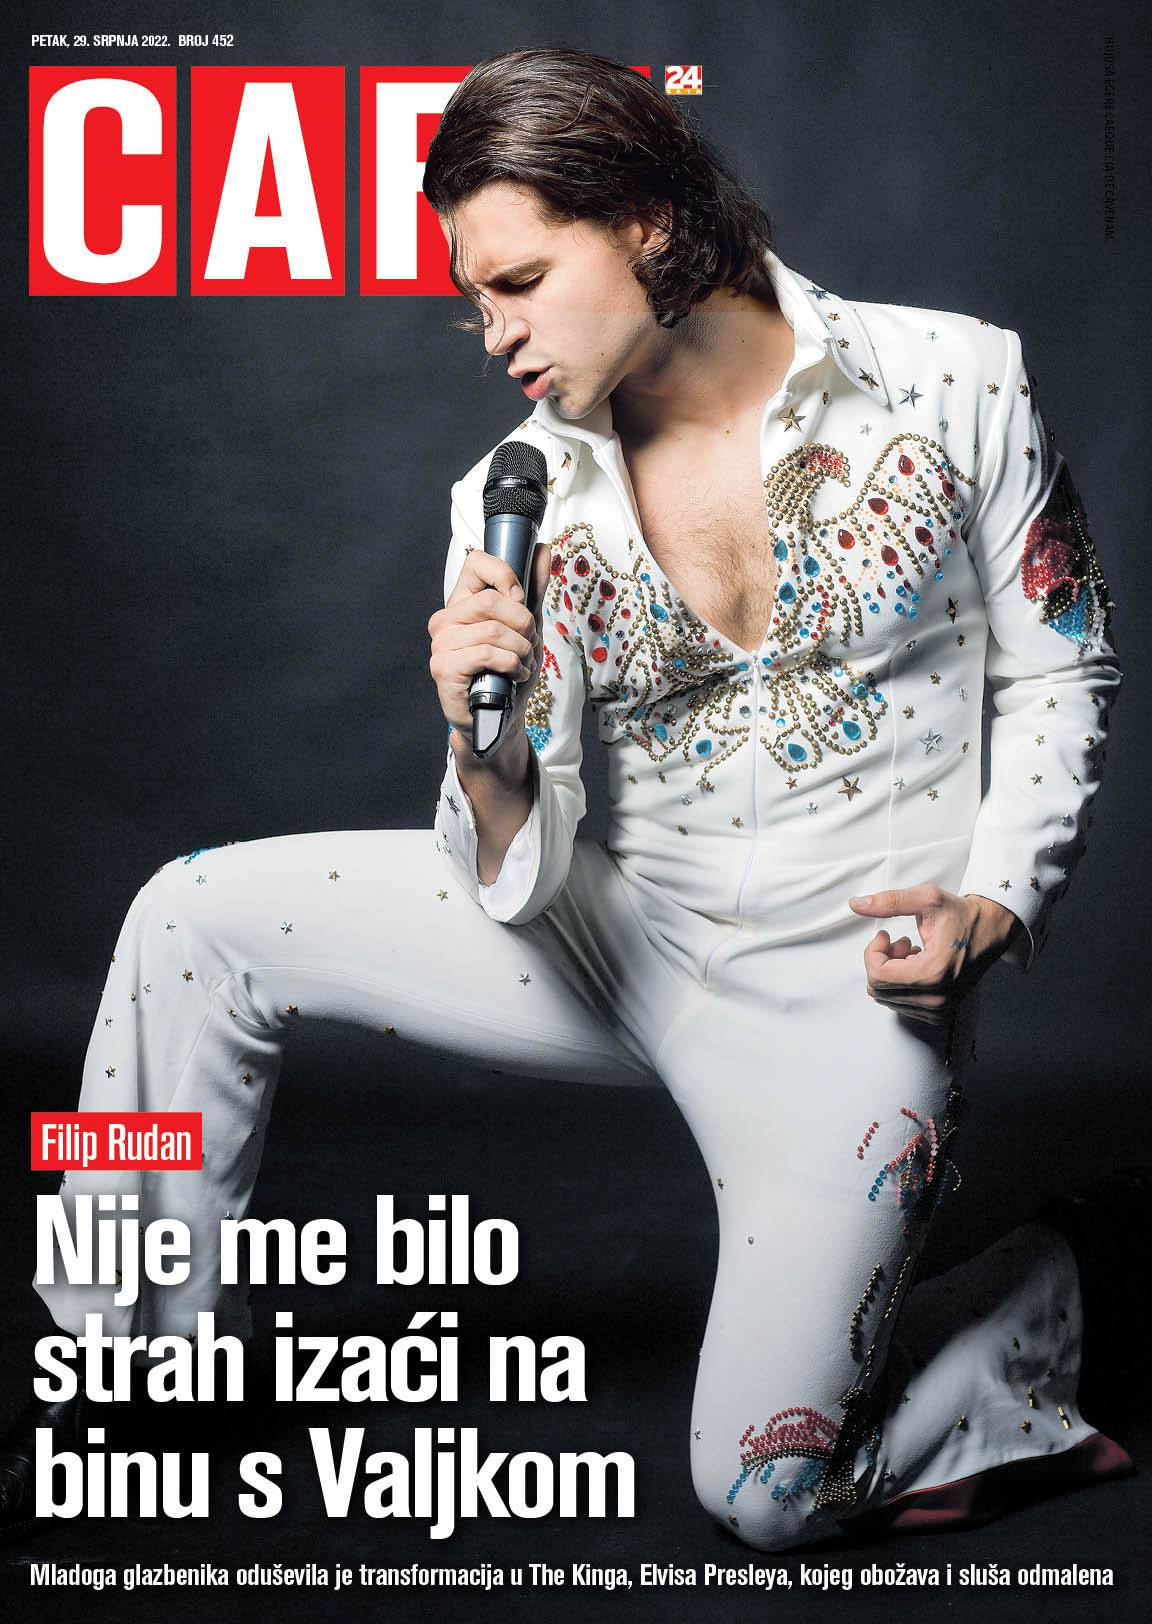 Elvis Presley je živ! Pjevač Filip Rudan kao kralj rock'n'rolla